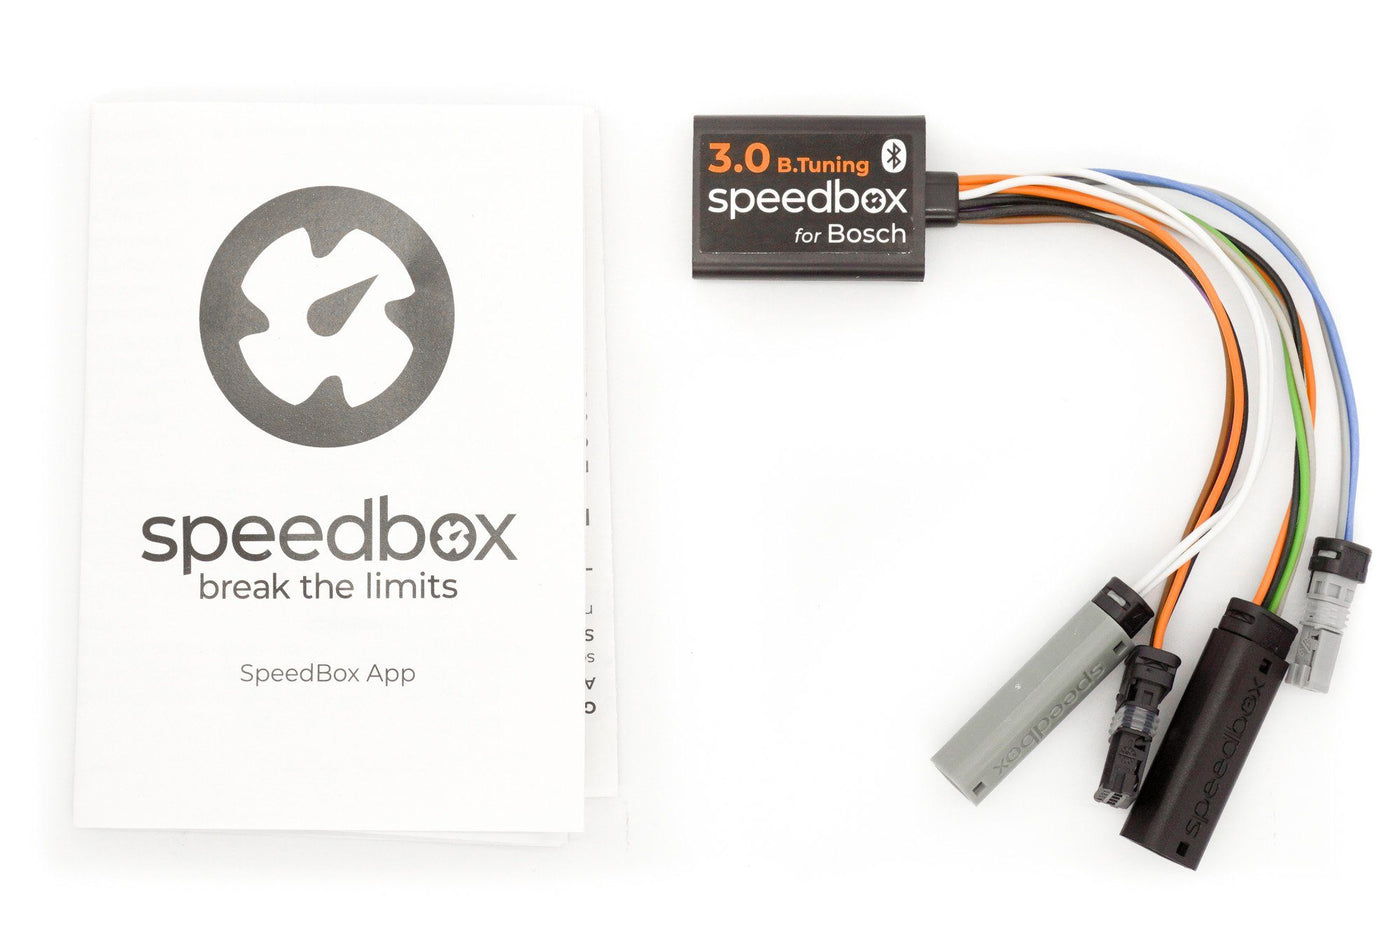 SpeedBox 3.0 B.Tuning für Bosch